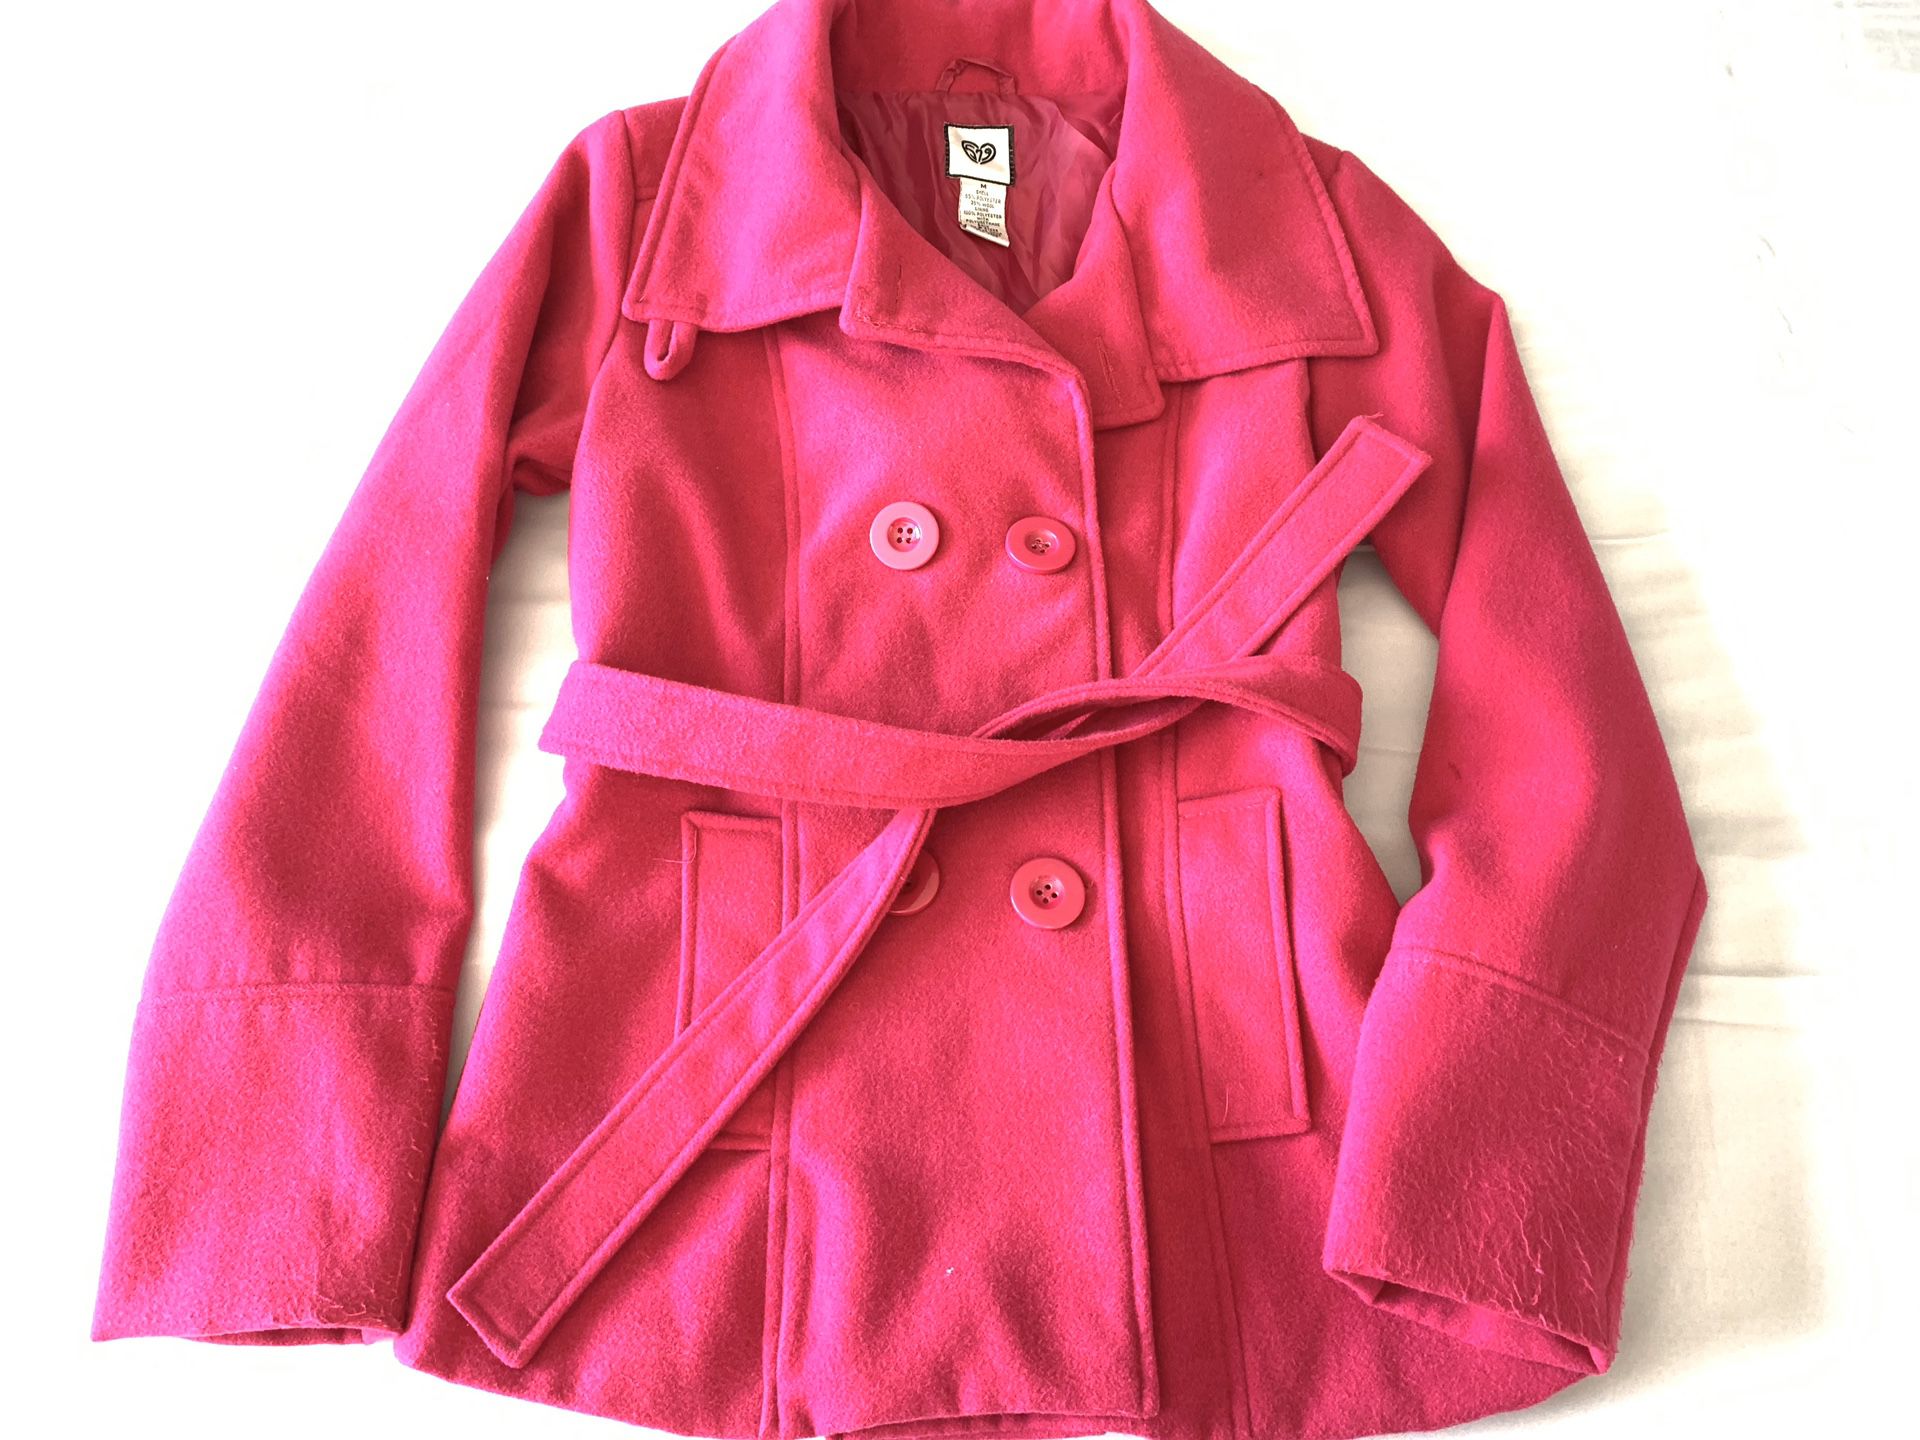 Juniors hot pink coat